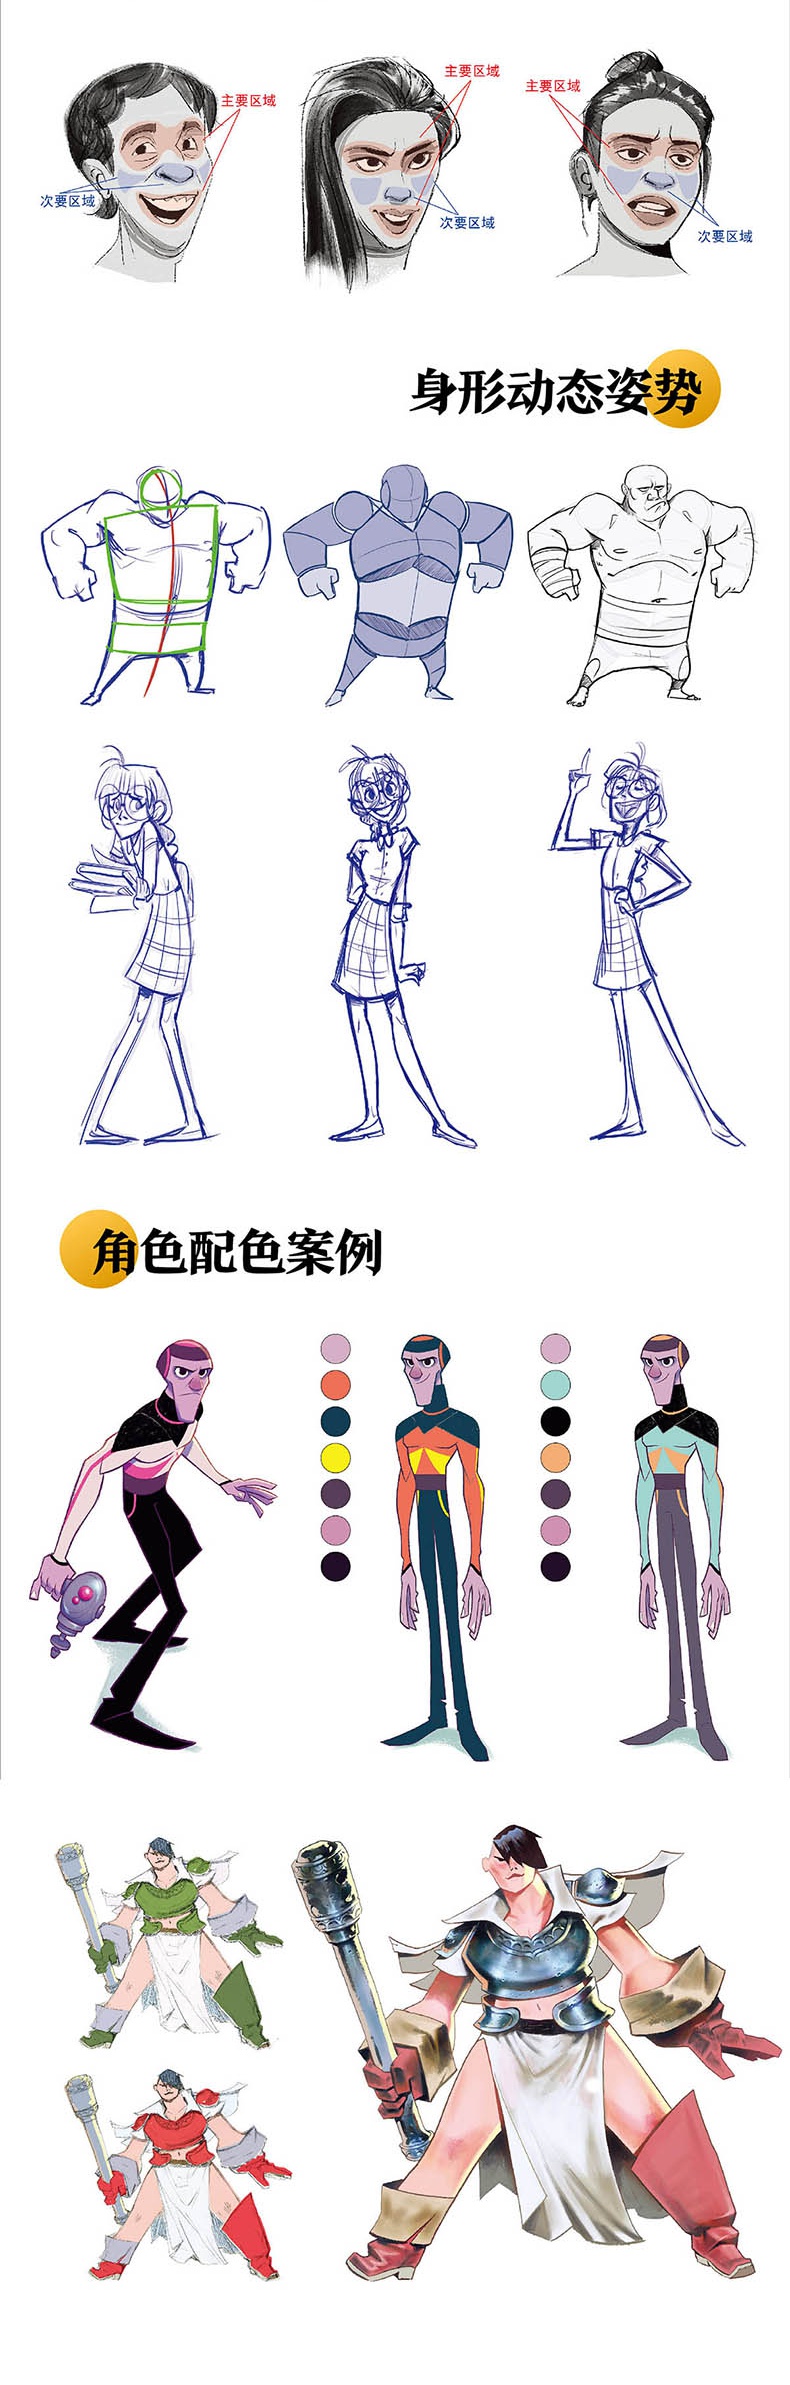 动画角色造型设计全书知识架构图动画觇色造型概述 